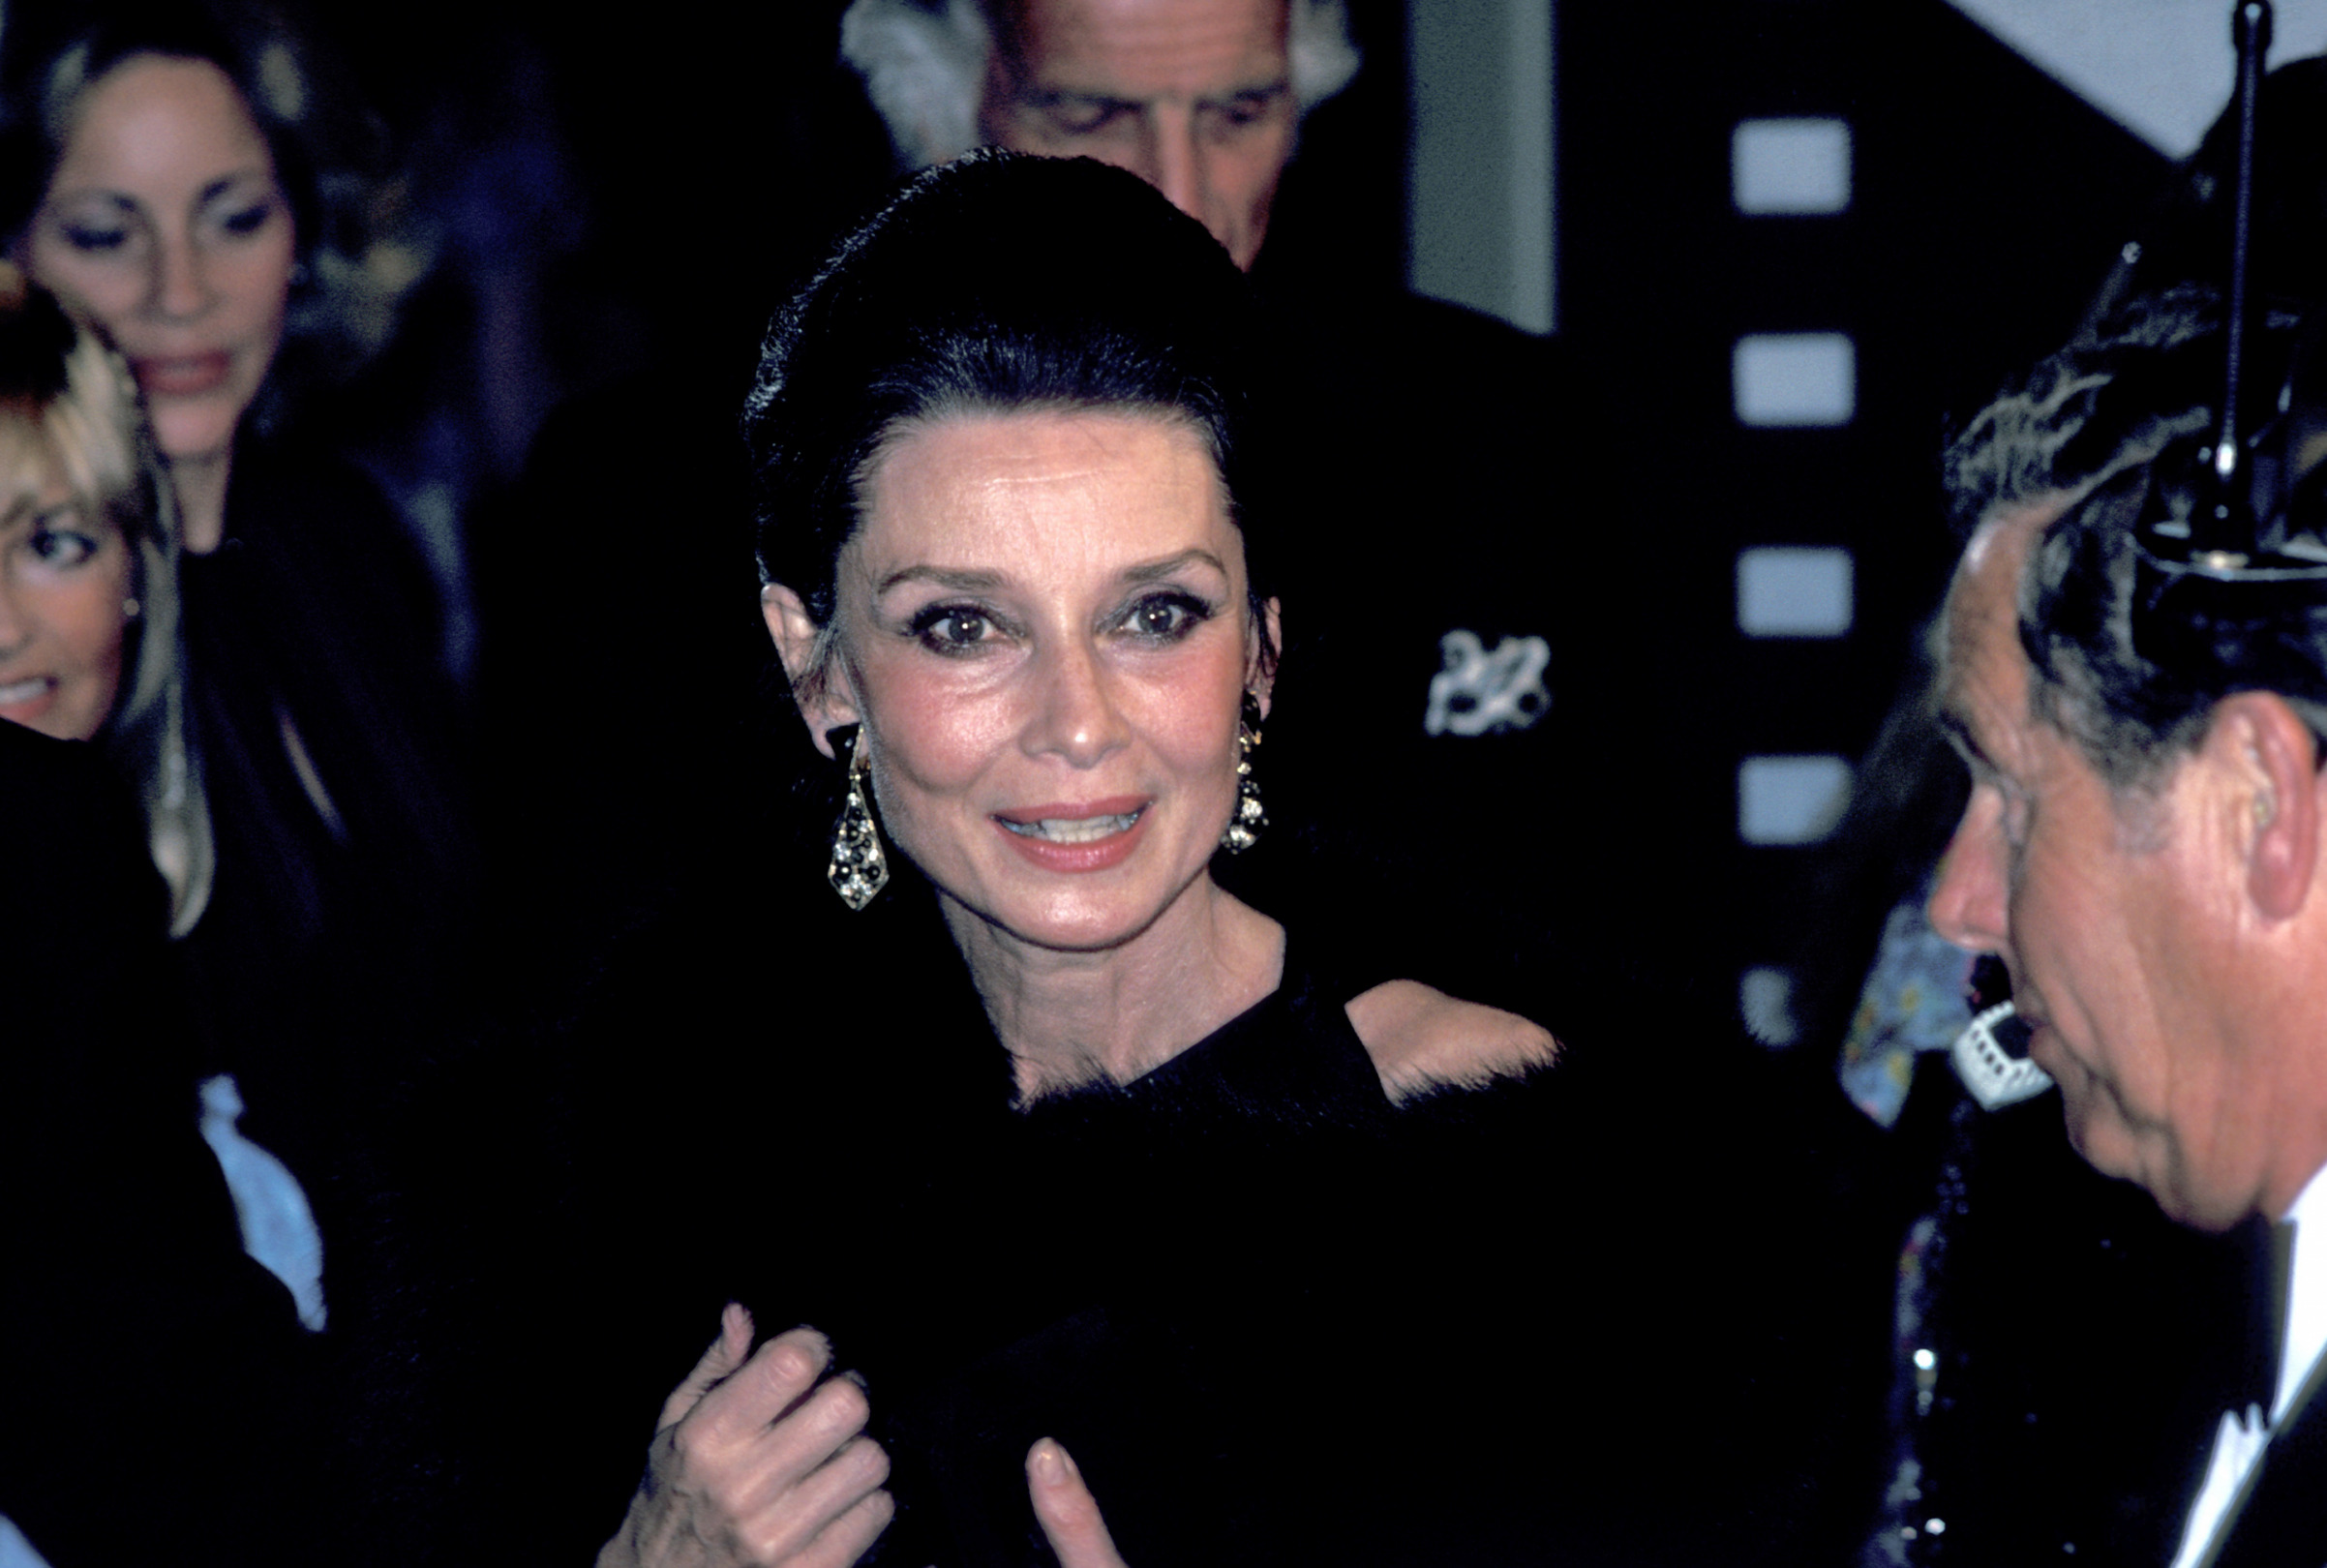 Güzellik İkonu: Audrey Hepburn